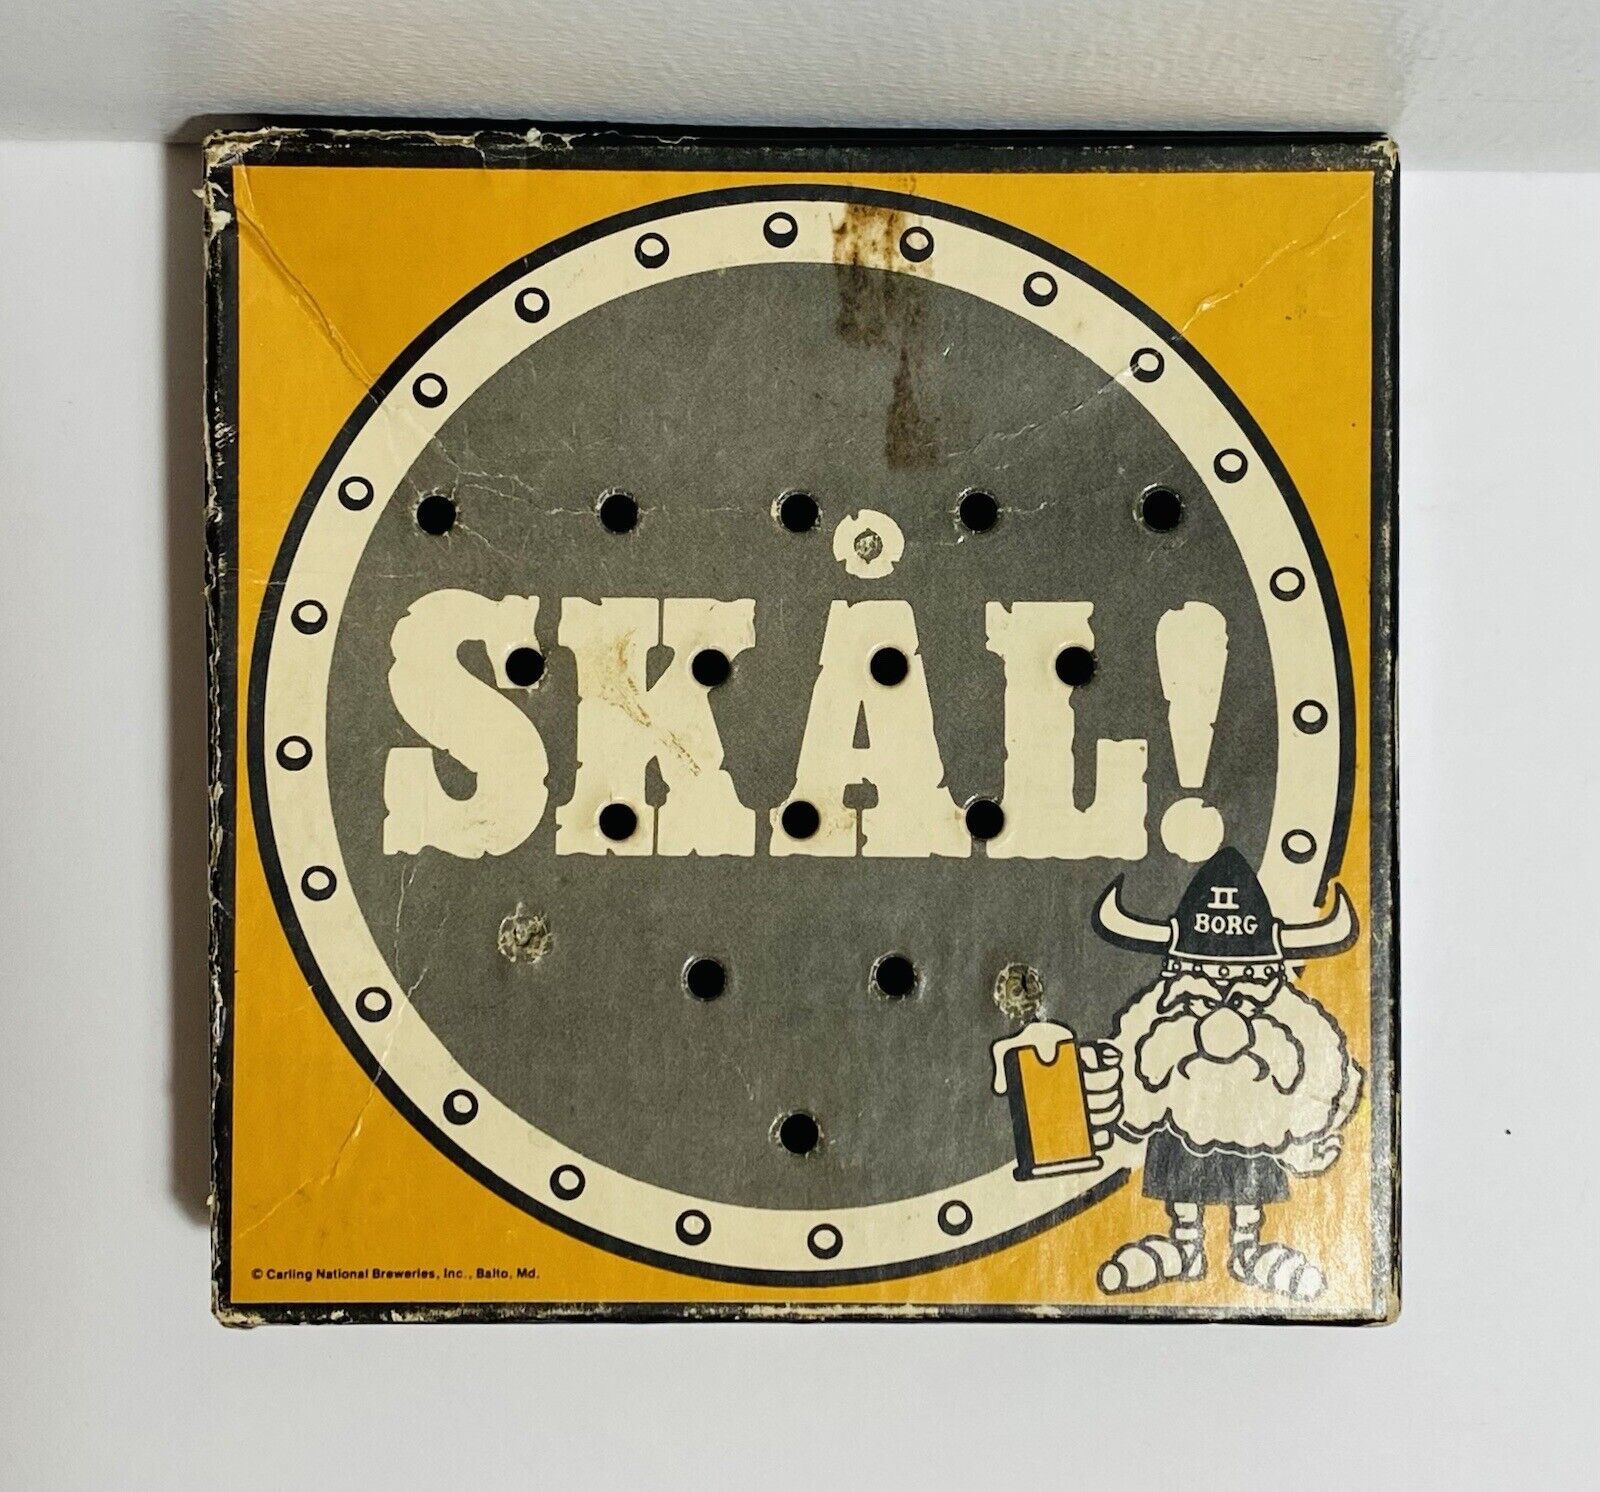 Vintage Tuborg Gold On Tap Carling National Brewery Skal Game Old Stock Skalgame